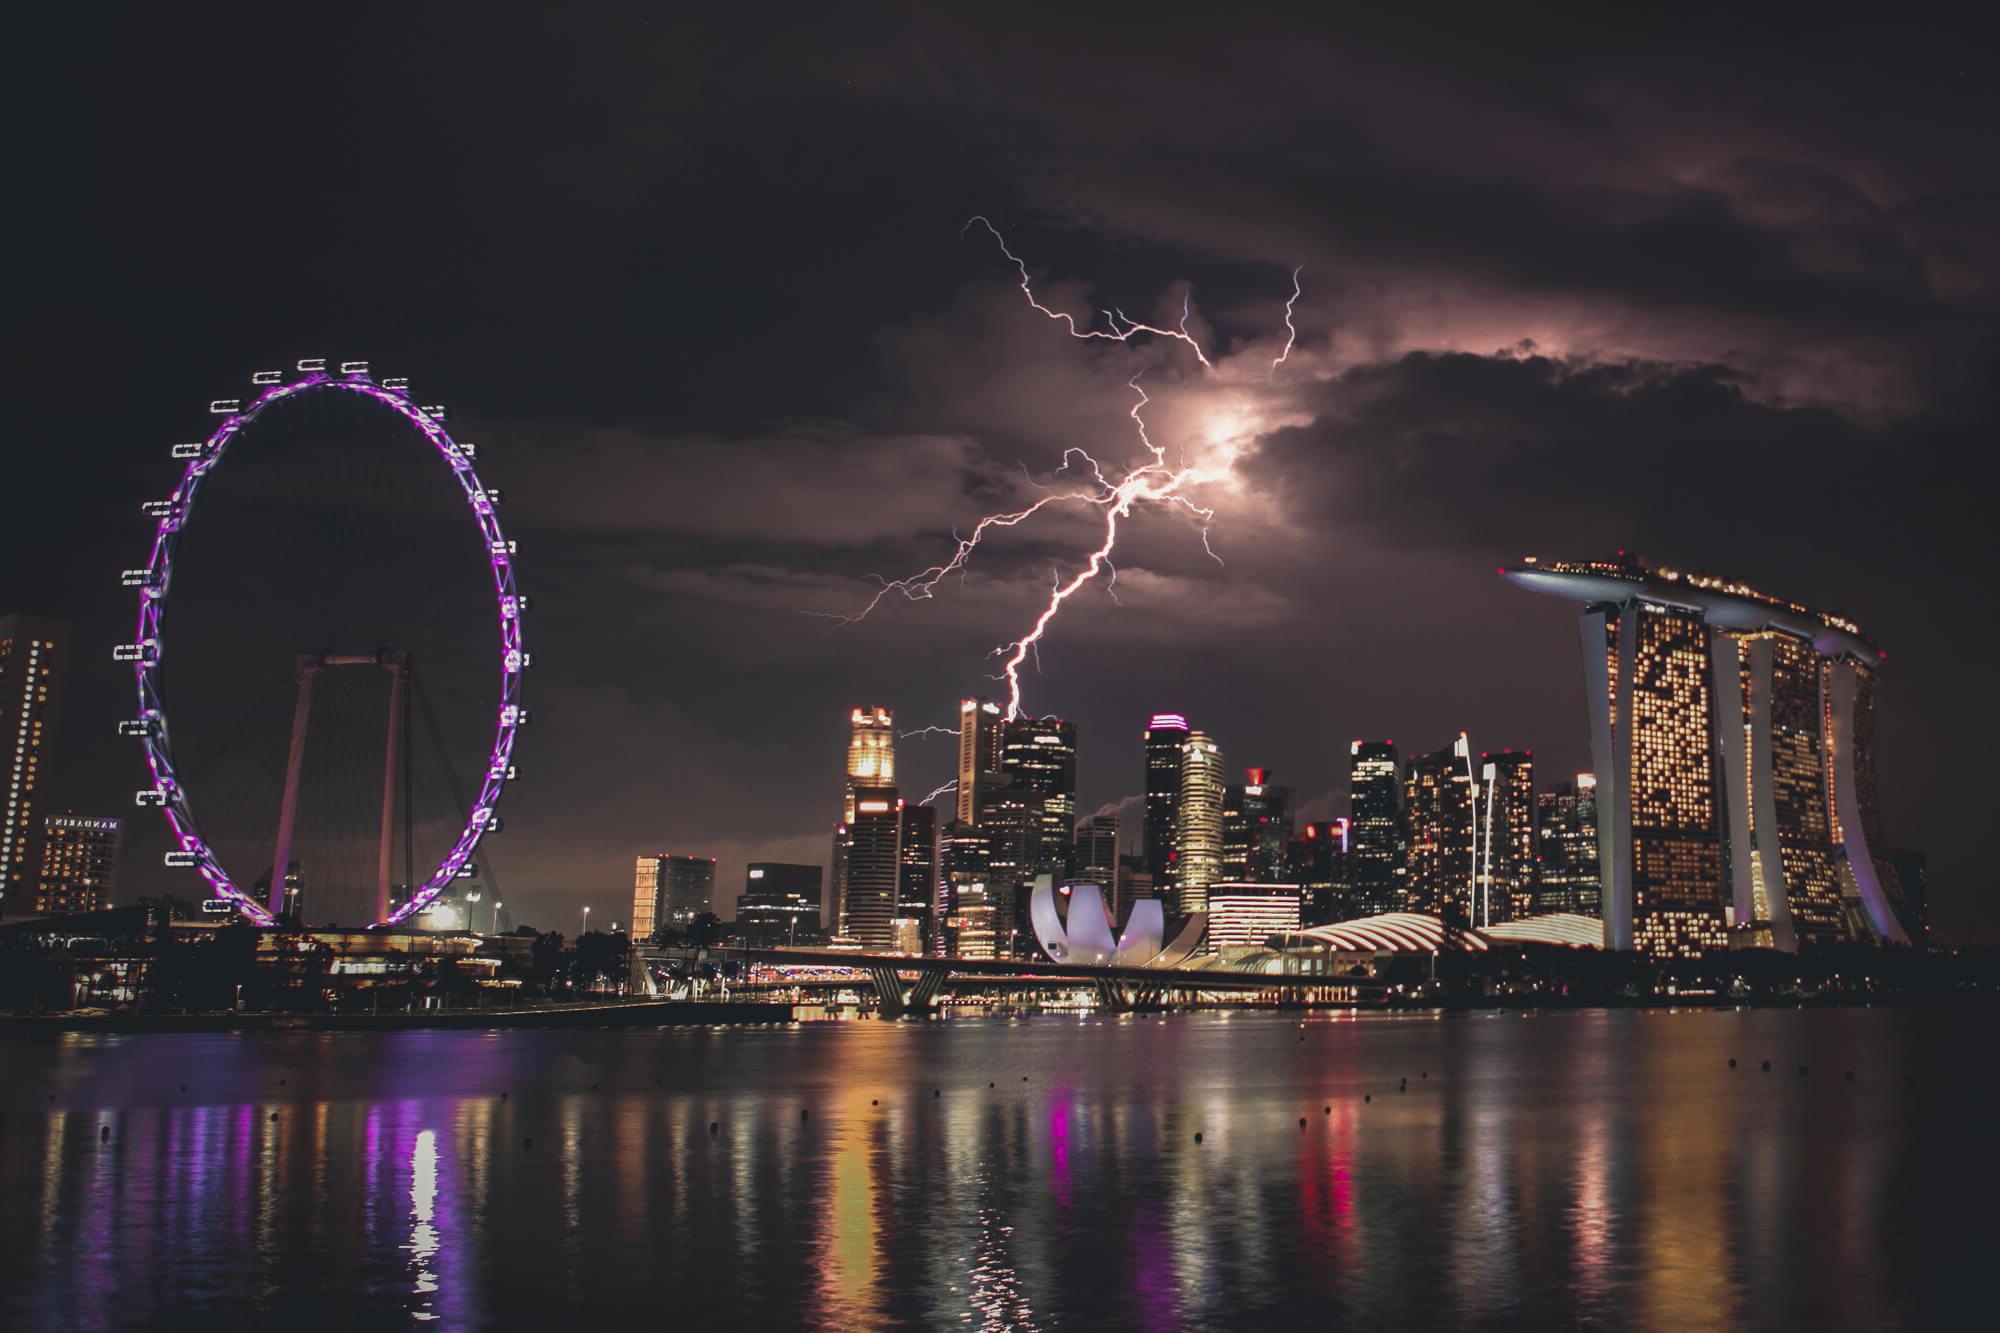 一个充满活力的夜间新加坡城市景观与闪电击中天空. 滨海湾金沙酒店的天际线灯火通明, 莲花形的艺术科学博物馆, 还有闪闪发光的新加坡摩天轮, 一切都映在宁静的水面上.